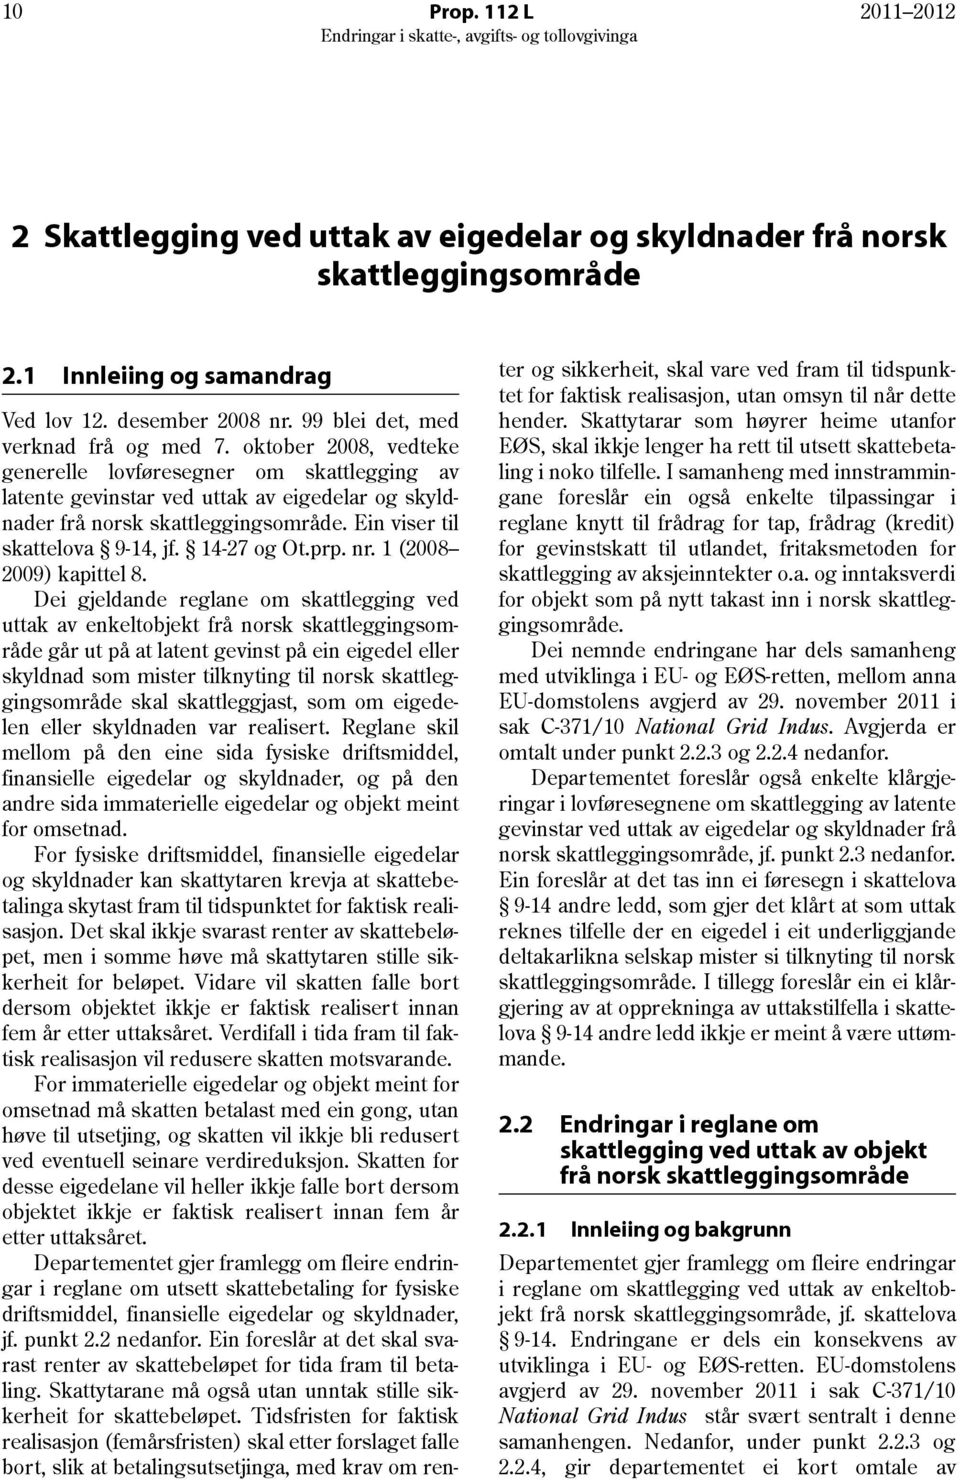 Ein viser til skattelova 9-14, jf. 14-27 og Ot.prp. nr. 1 (2008 2009) kapittel 8.